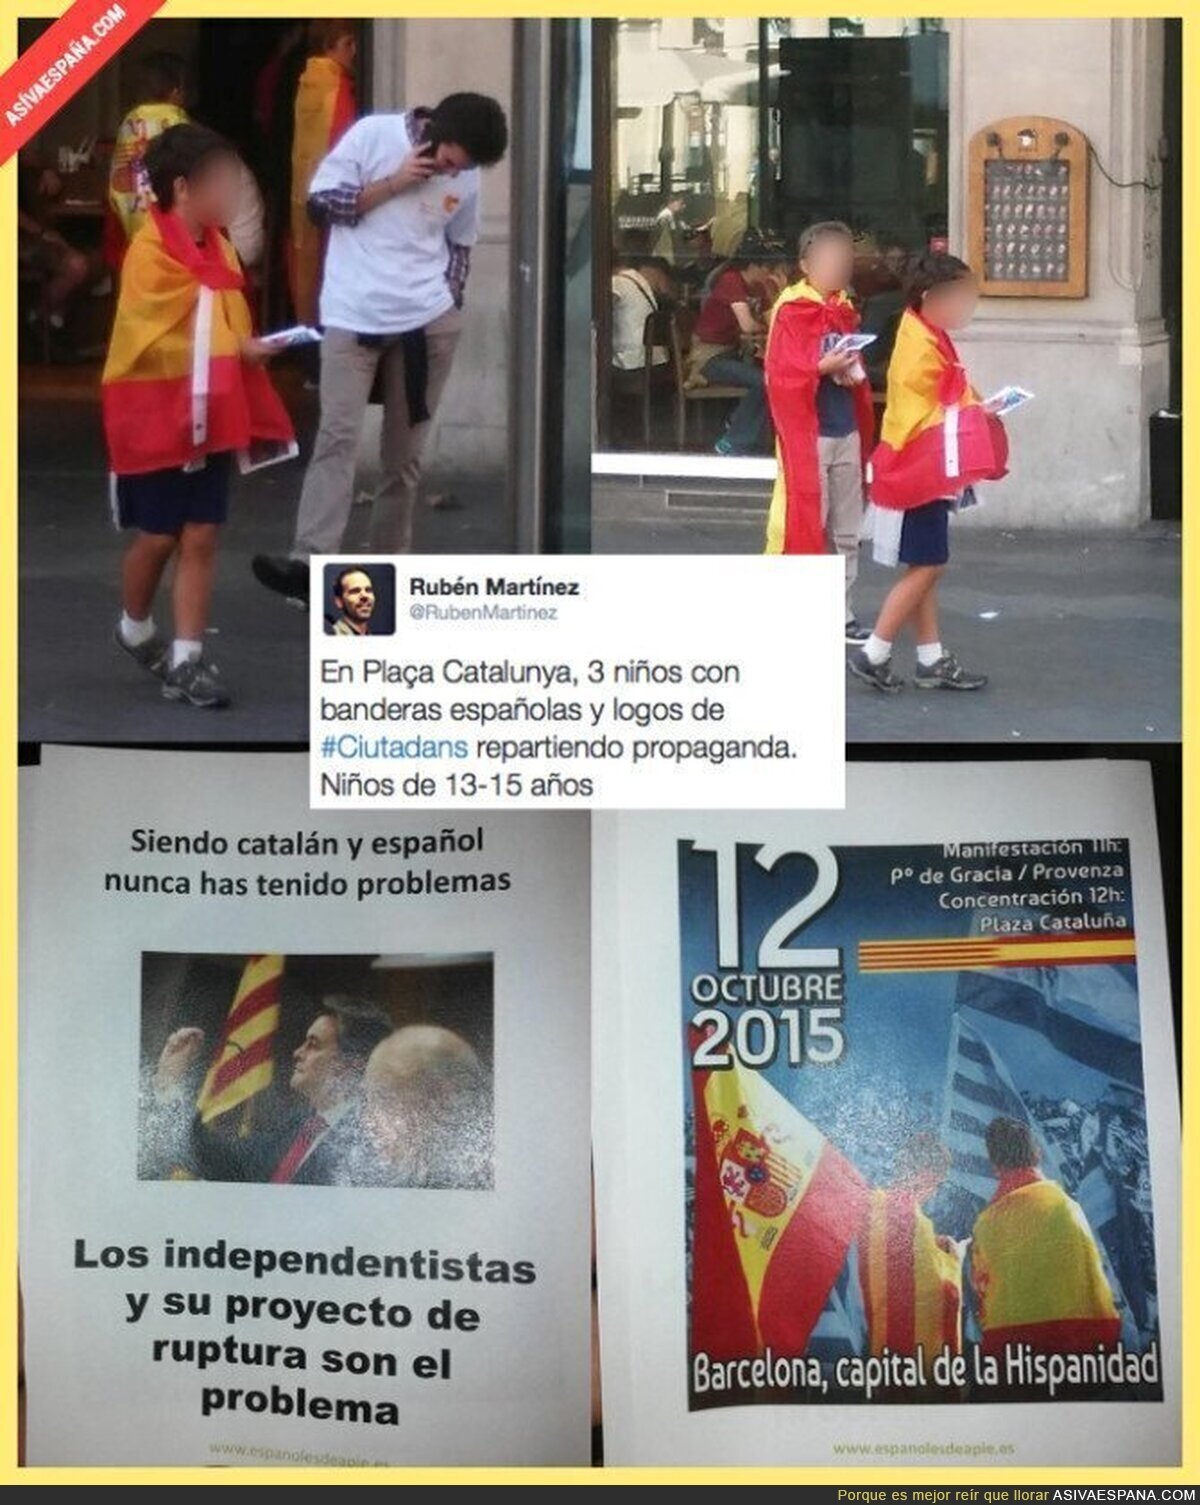 ¿Qué hacen en Barcelona usando niños para repartir propaganda política?